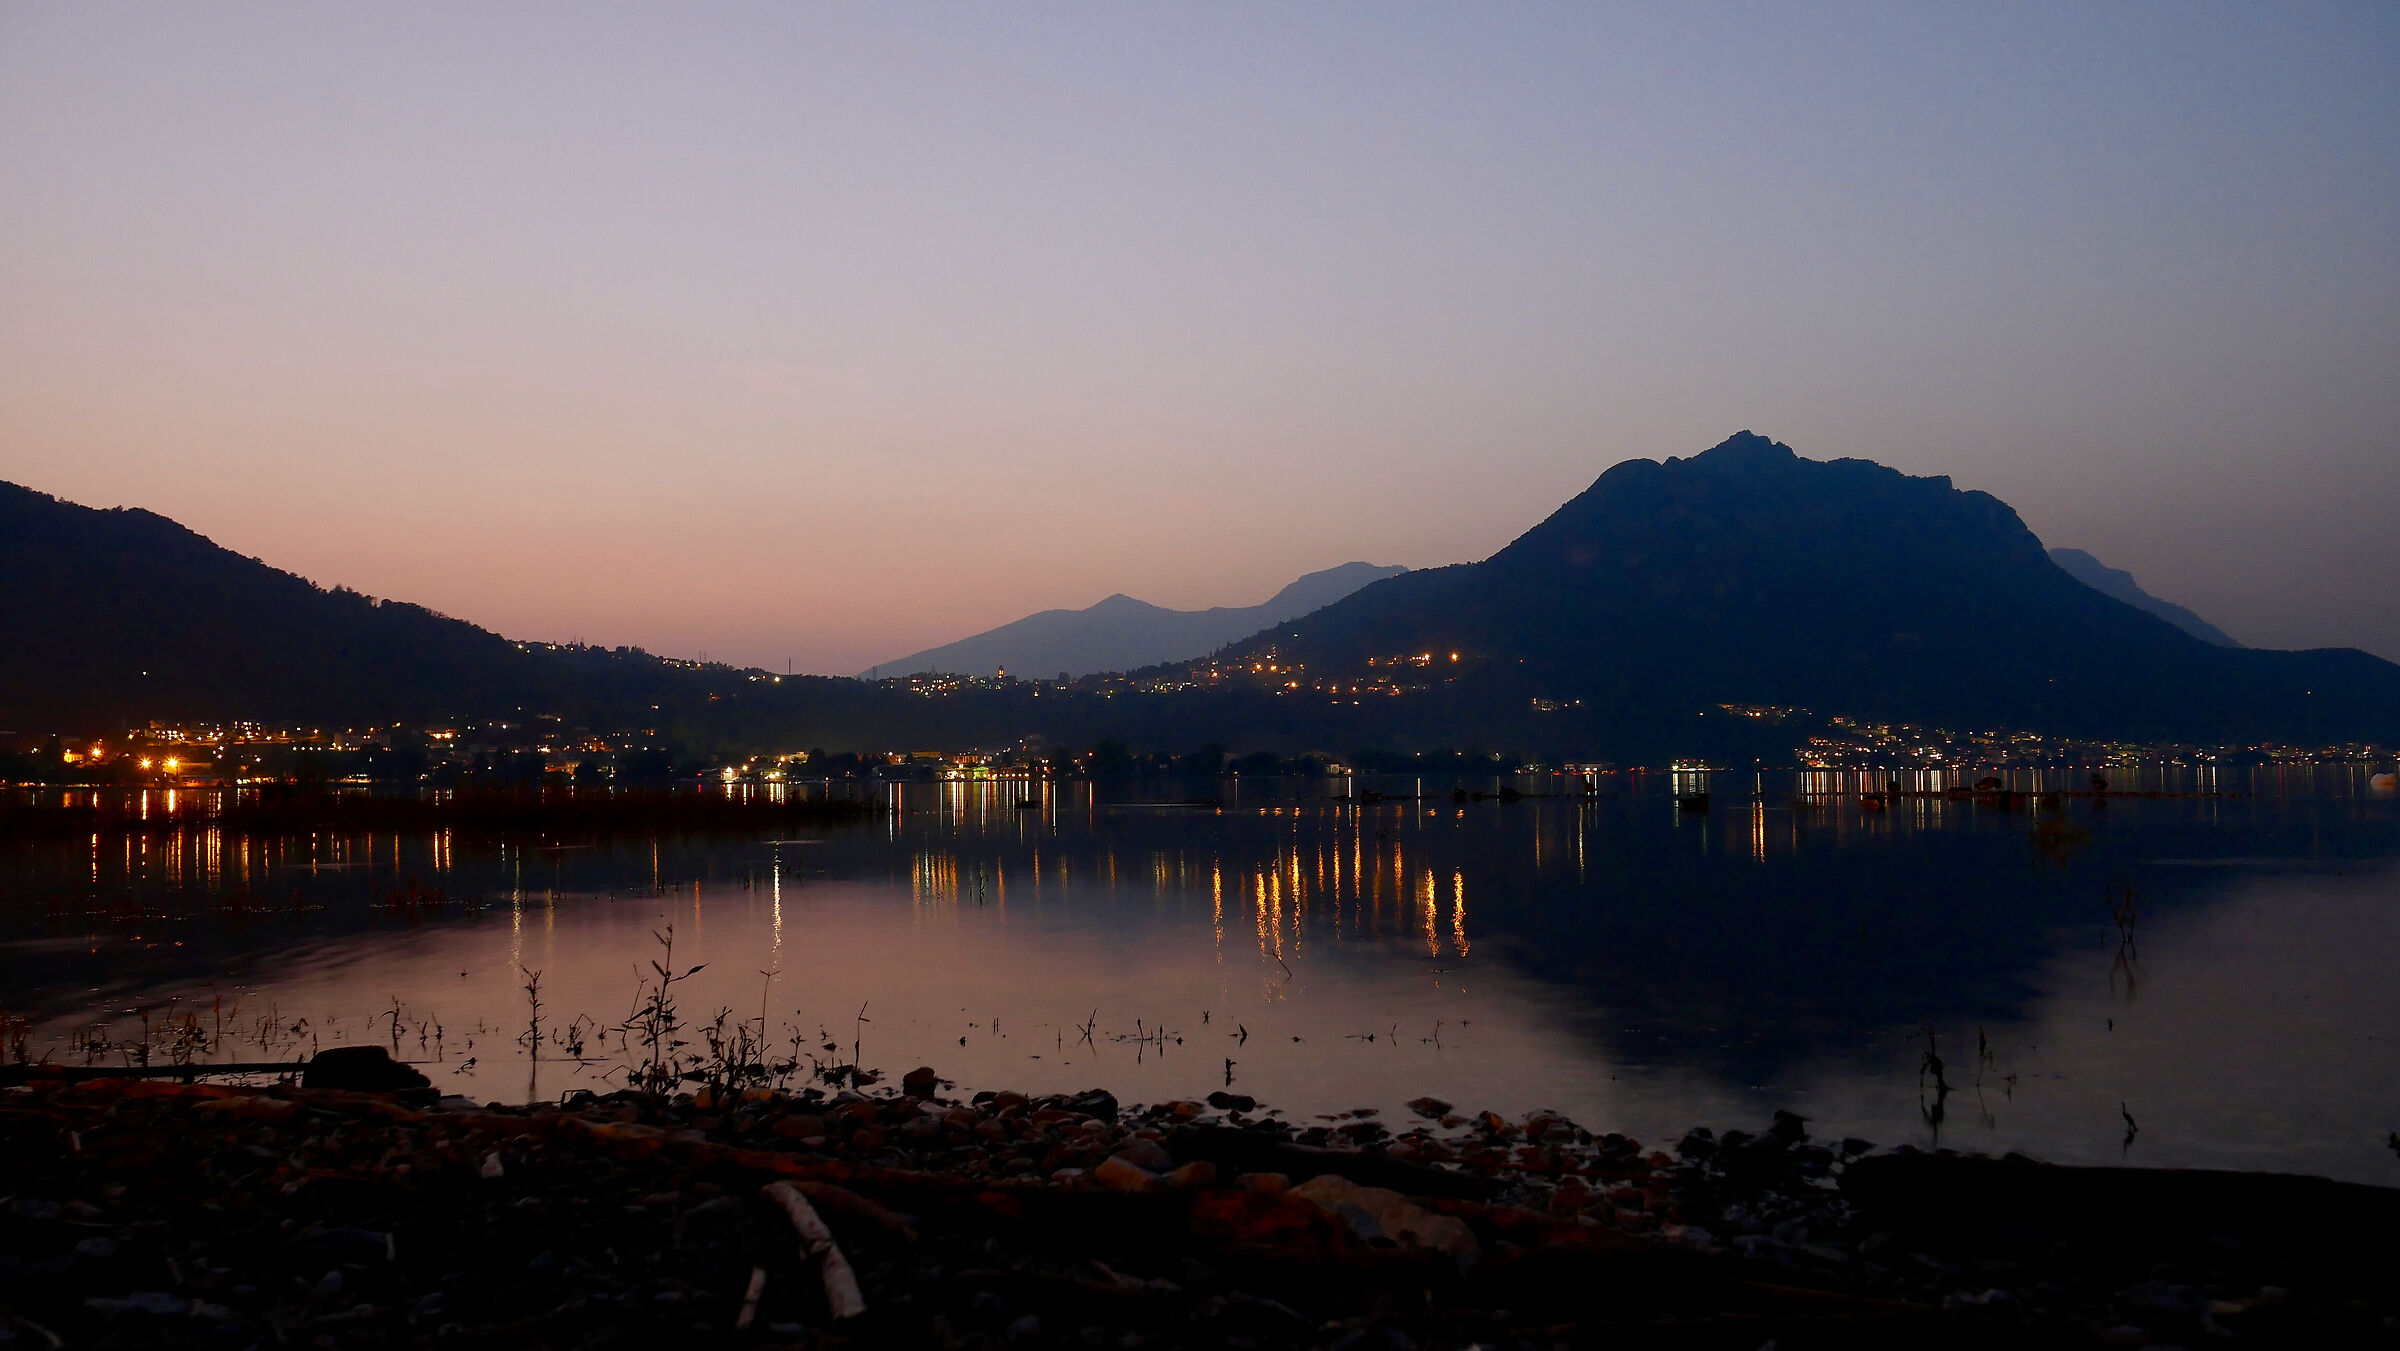 tramonto sul lago di Garlate di inizio ottobre...